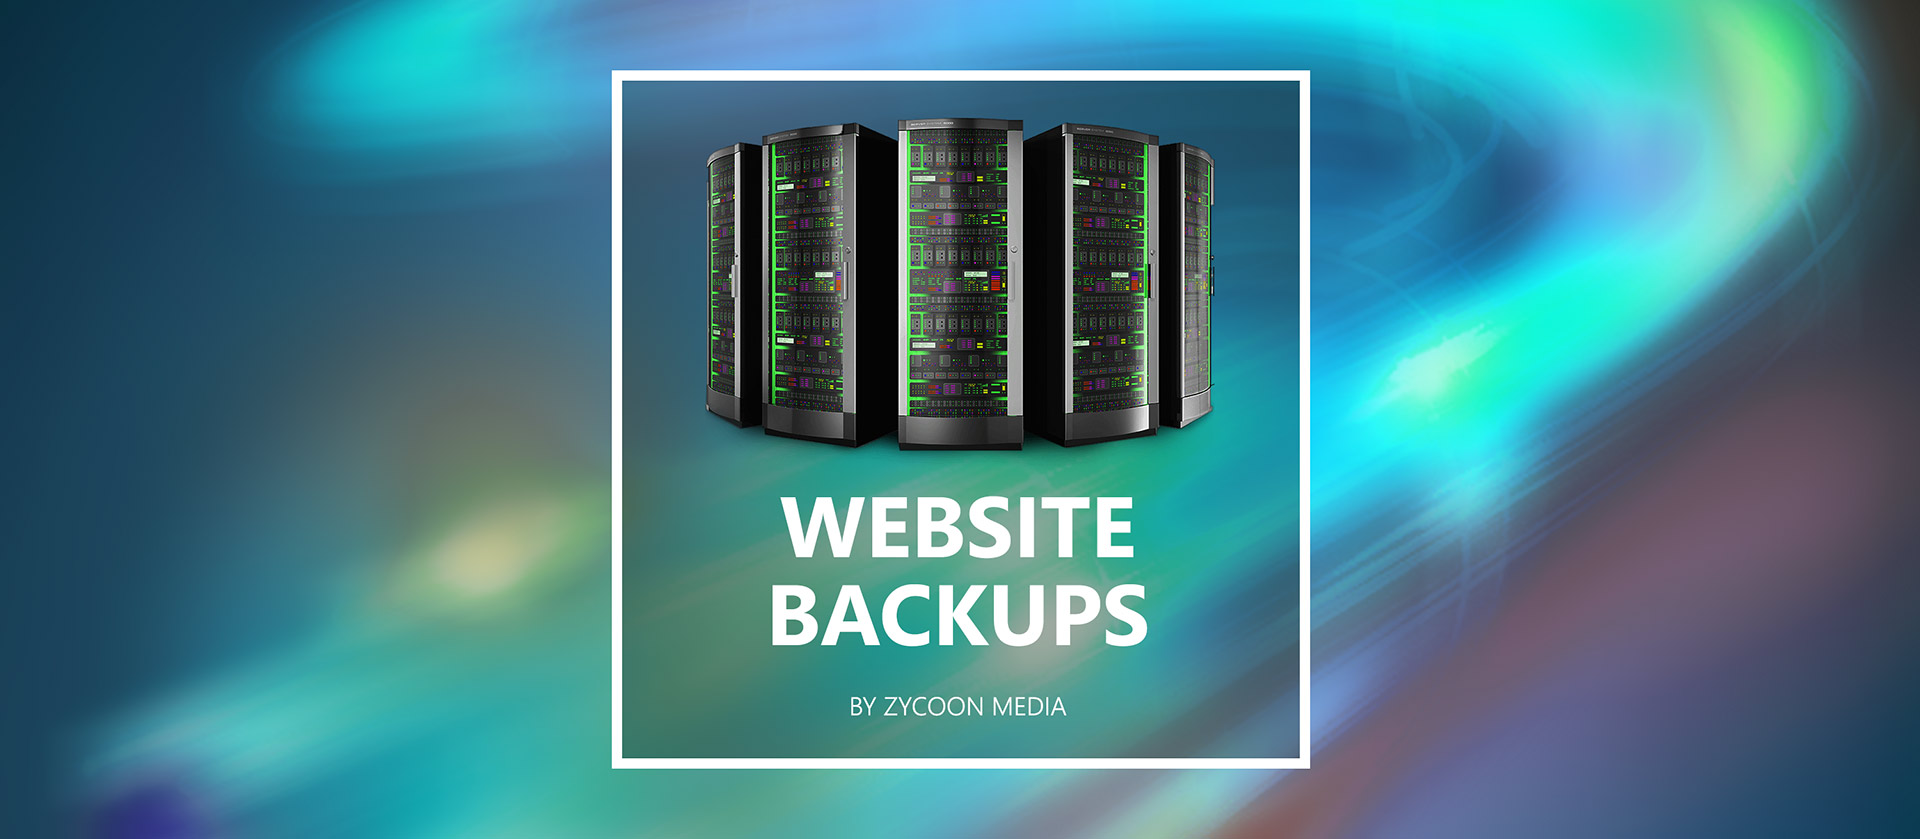 Website Backups